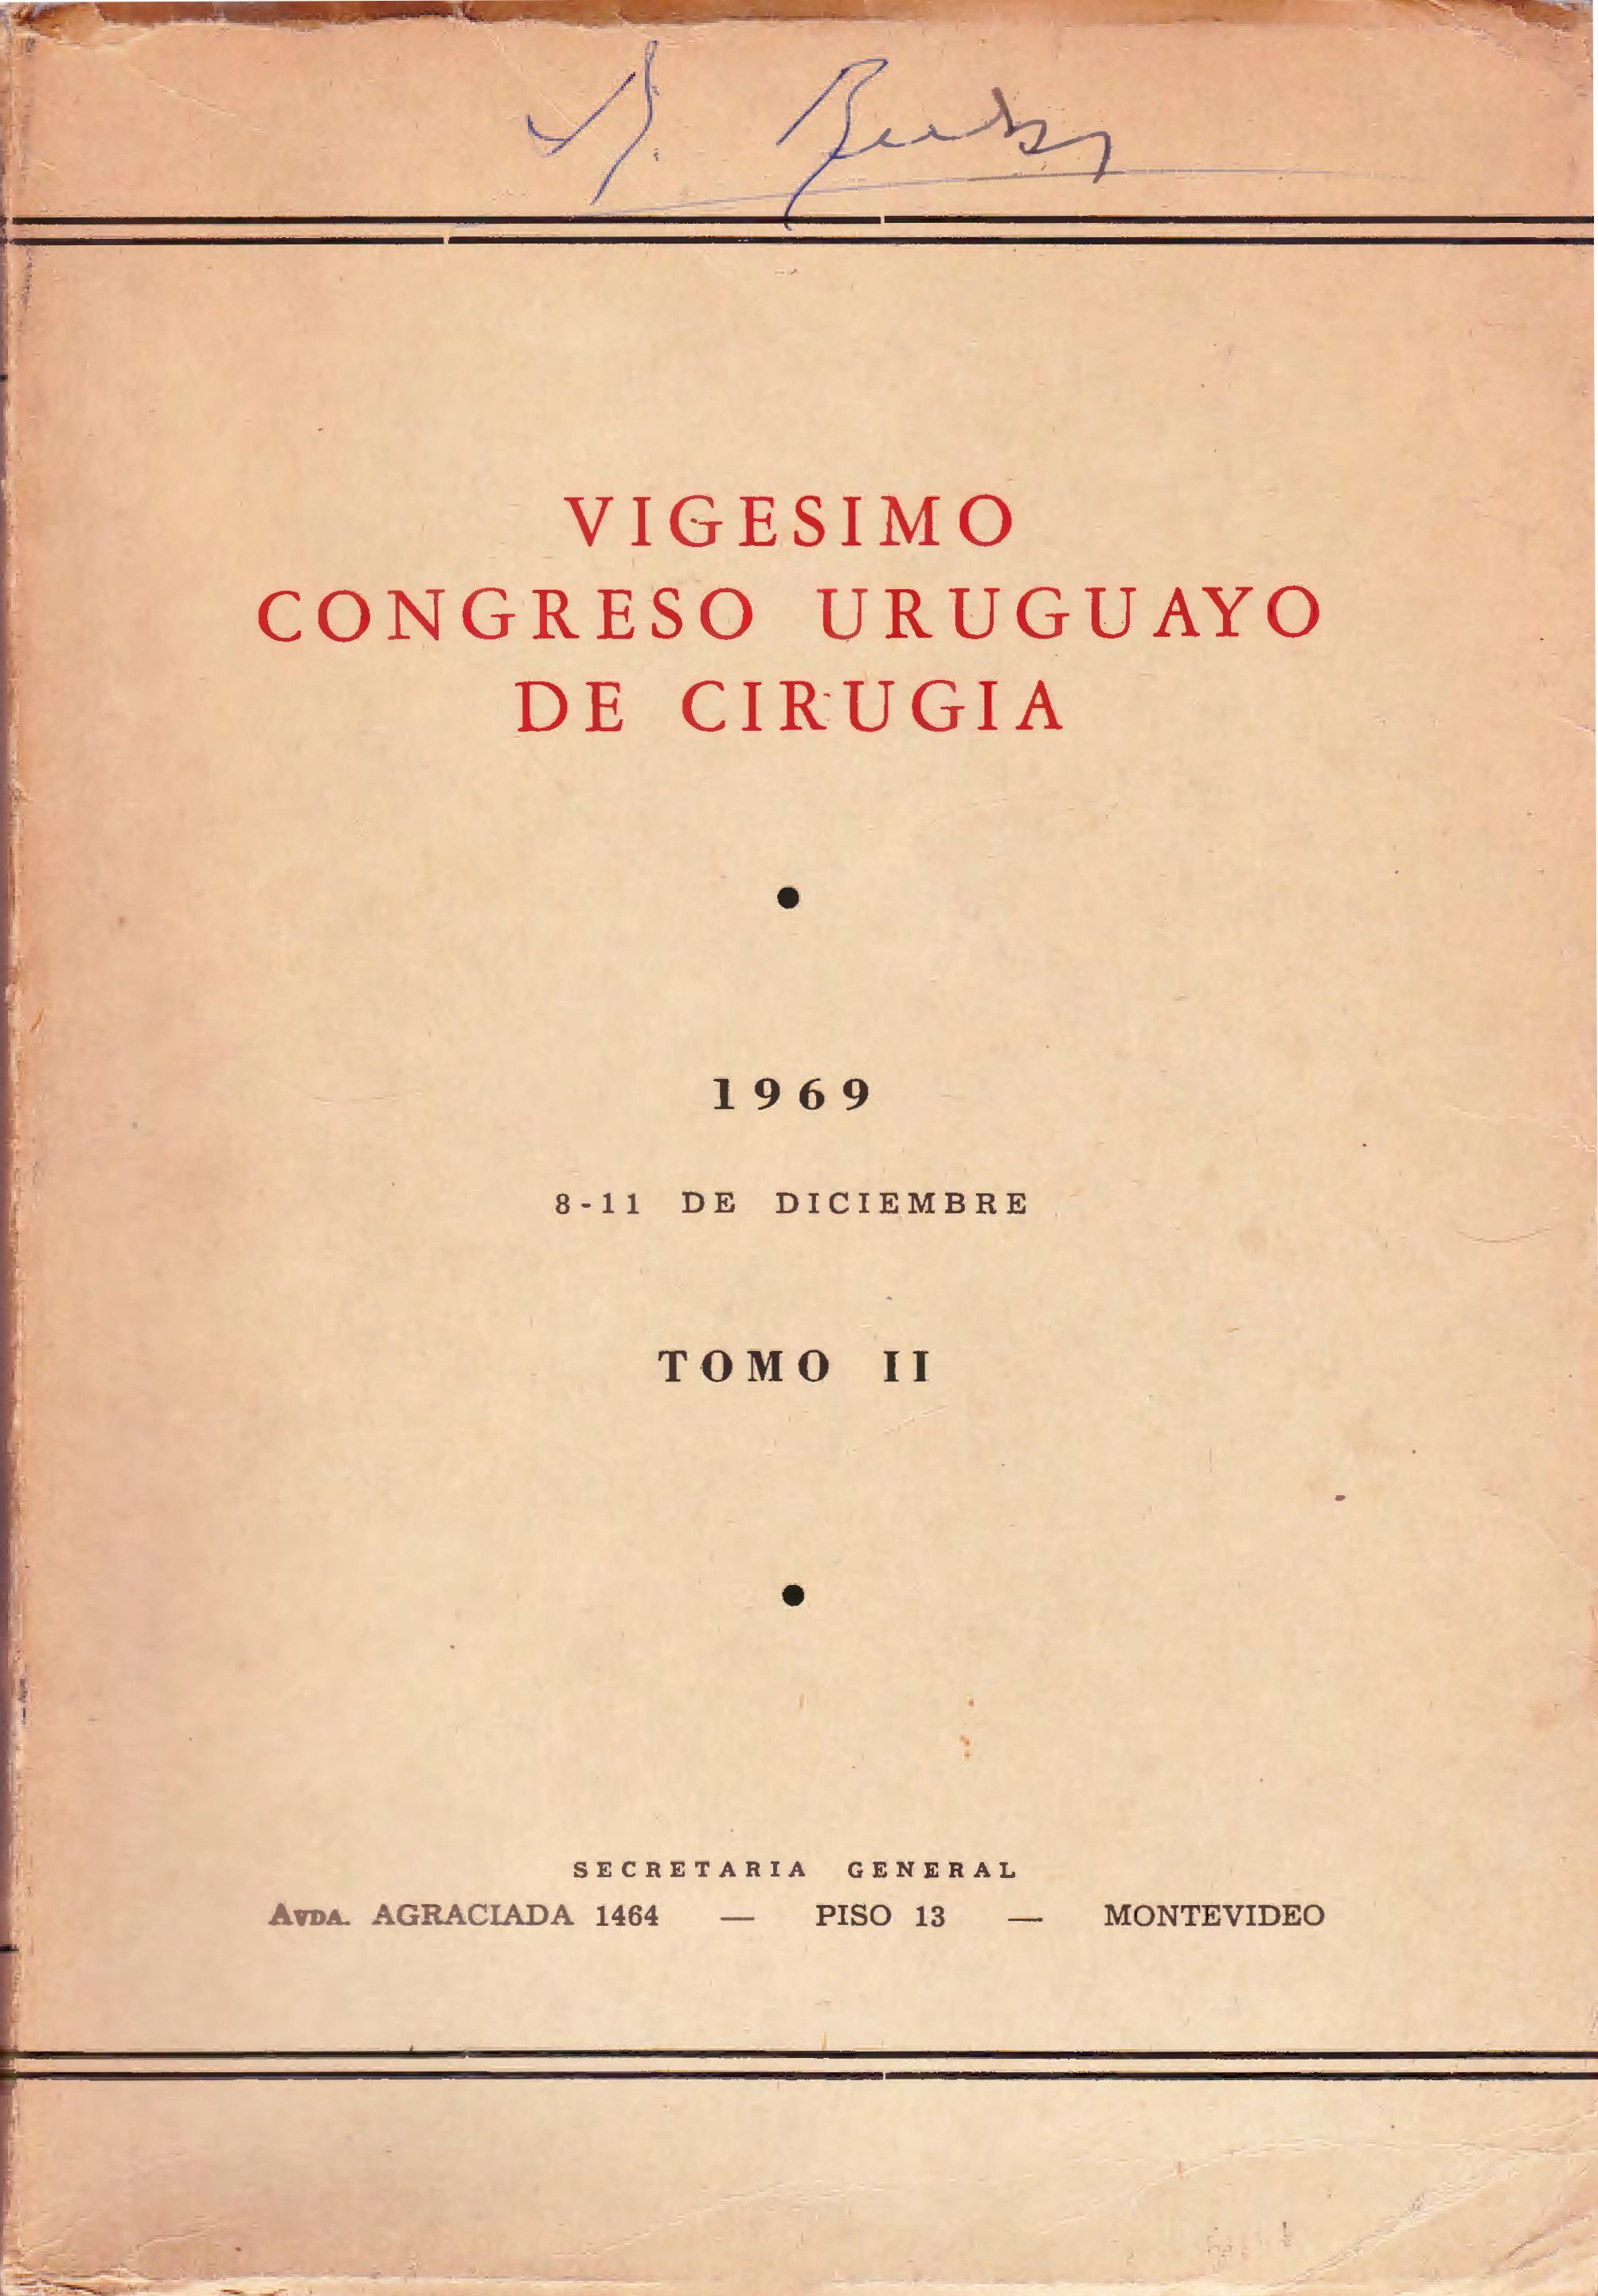 					Ver Núm. 2 (1969): Congresos Uruguayos de Cirugía
				